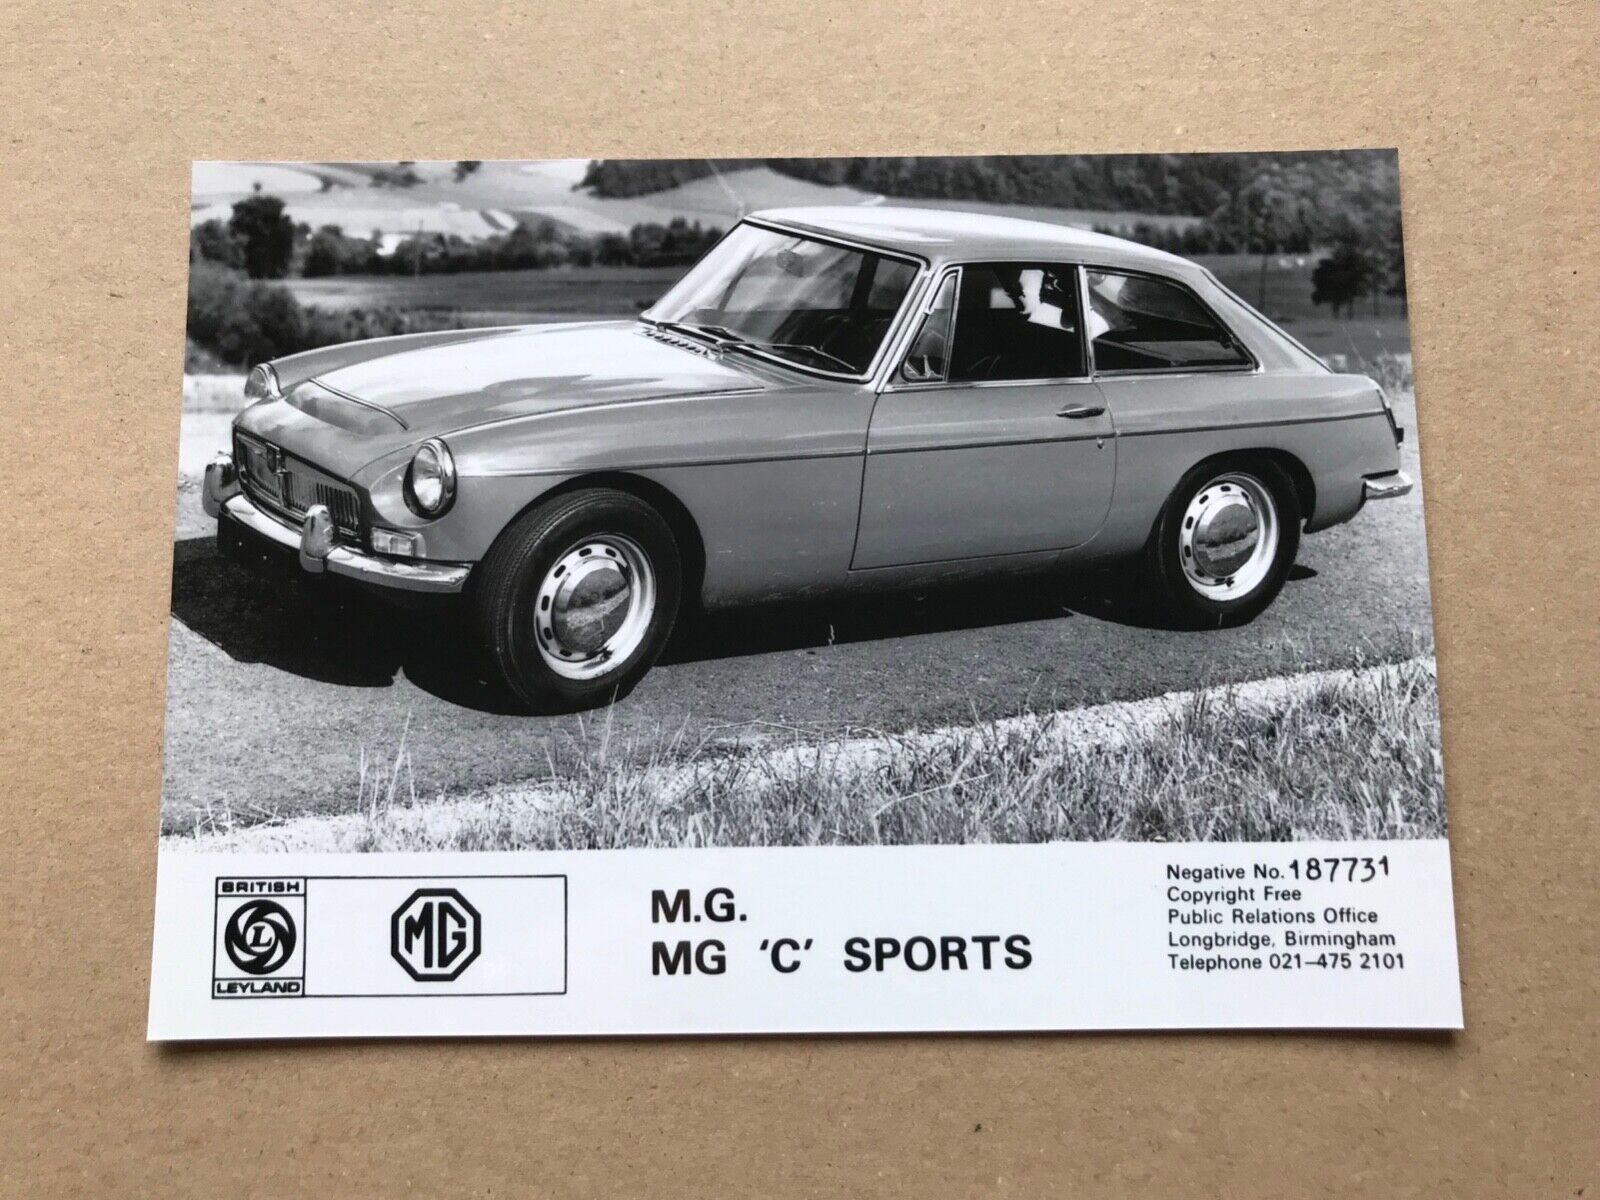 MG MGC Coupe Press Photograph